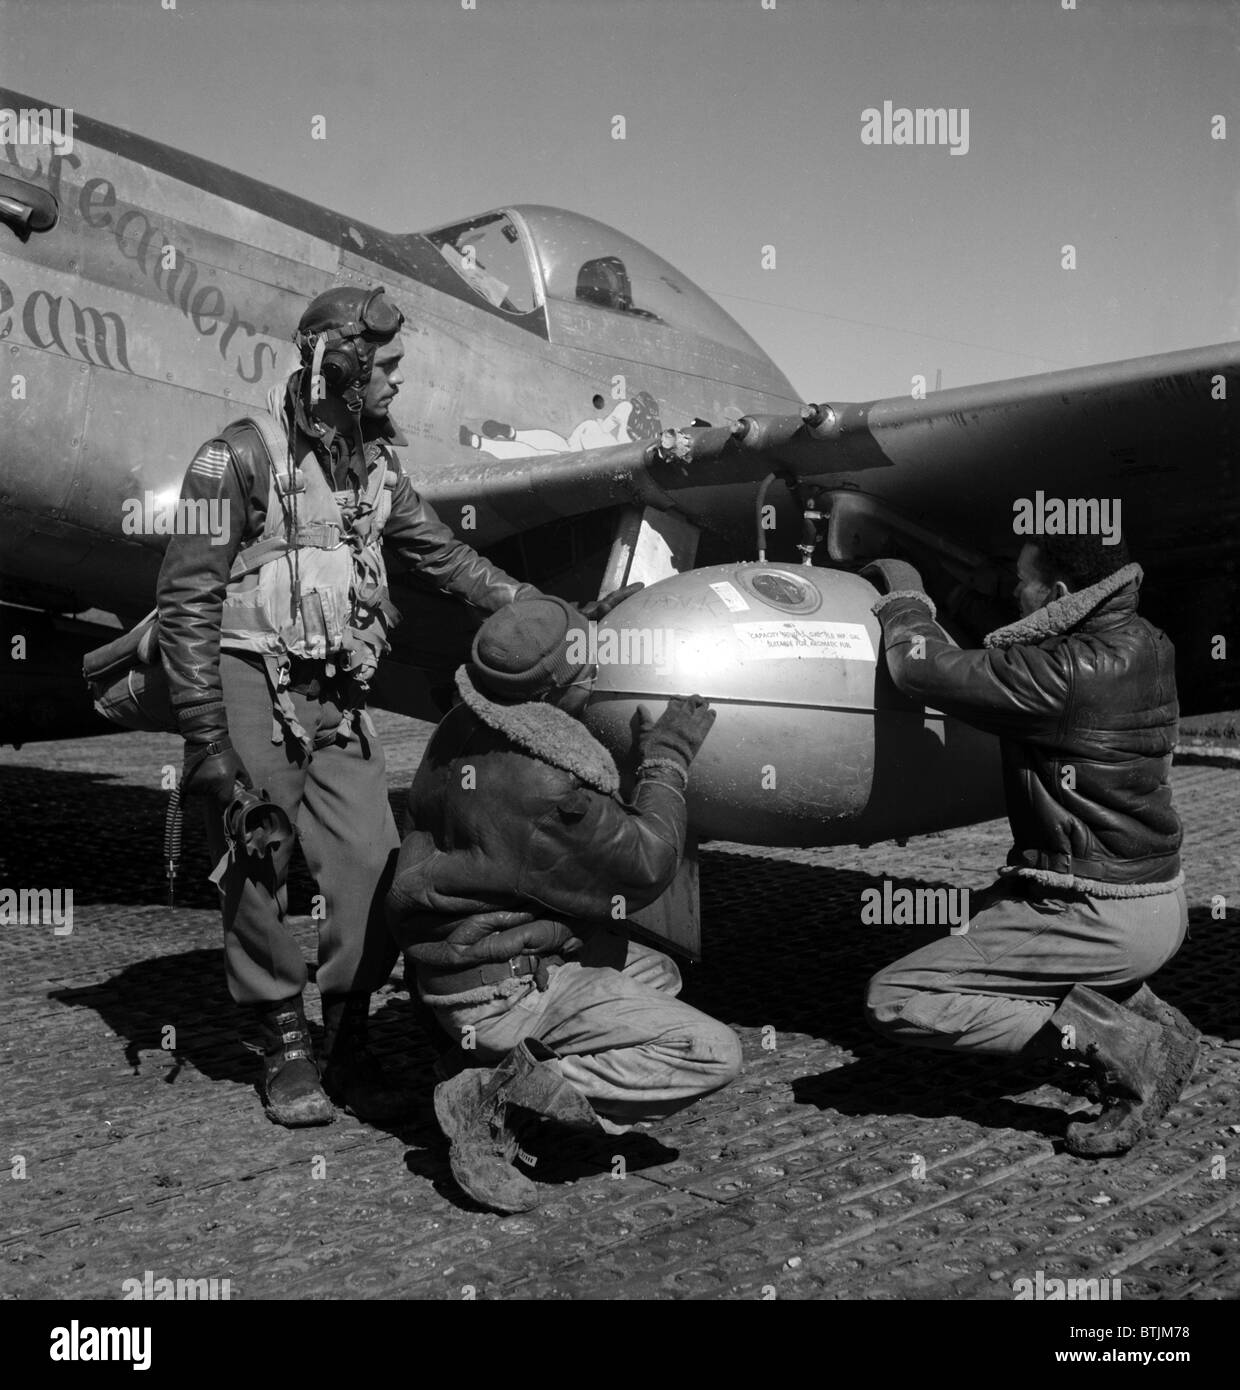 Un piloto de combate de Tuskegee y dos aviadores ajuste externo de 75 galones tanque de caída en el ala de un P-51D Mustang, Ramitelli, Italia, marzo de 1945. Fotografía por Toni Frissell. Foto de stock